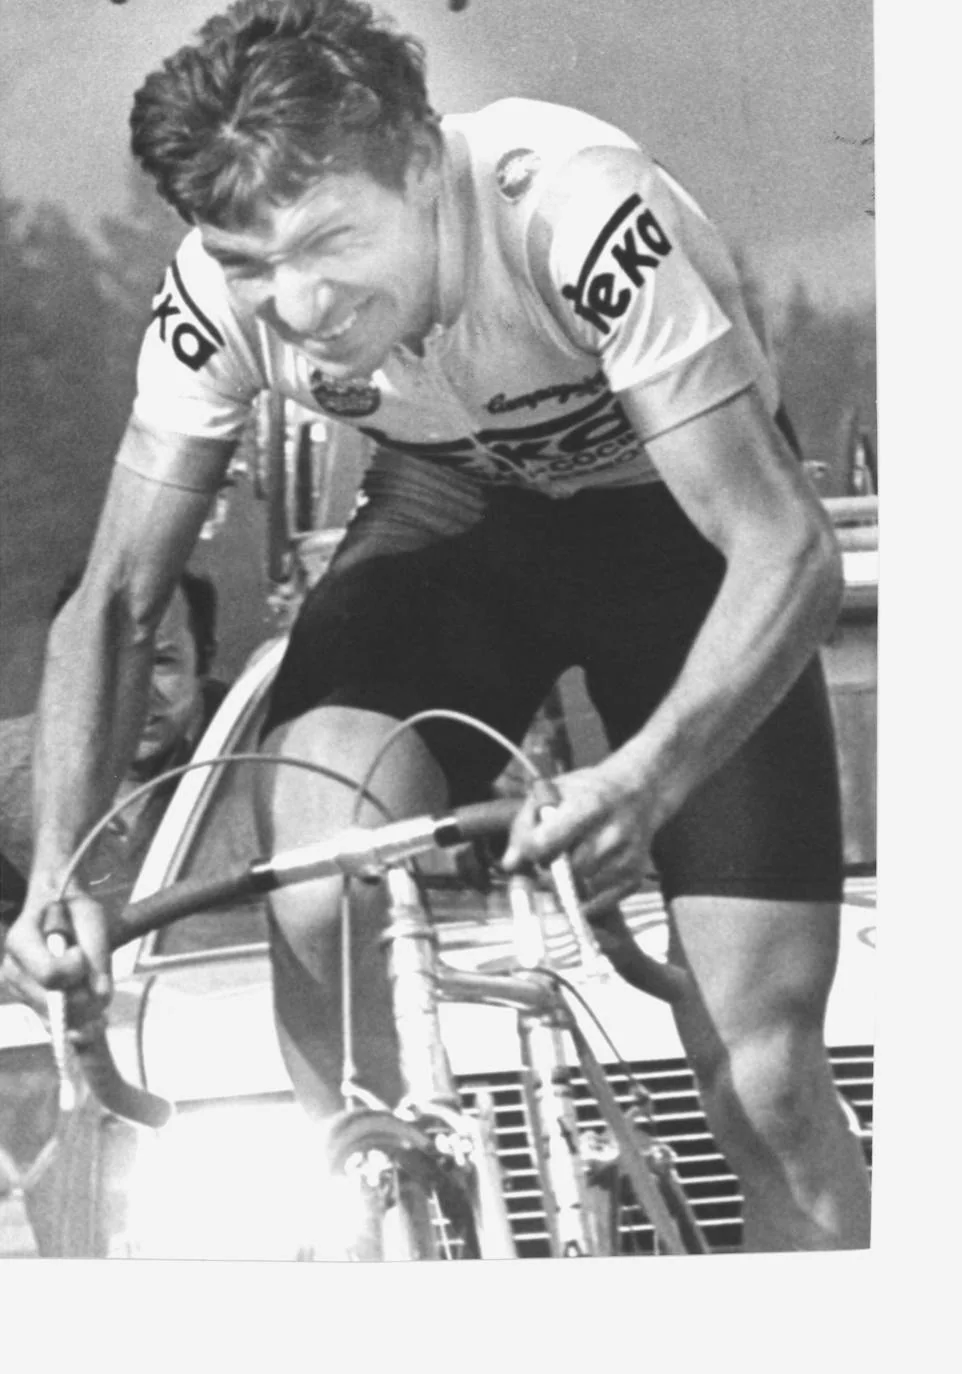 Imagen de 1983 del ciclista Alberto Fernández.